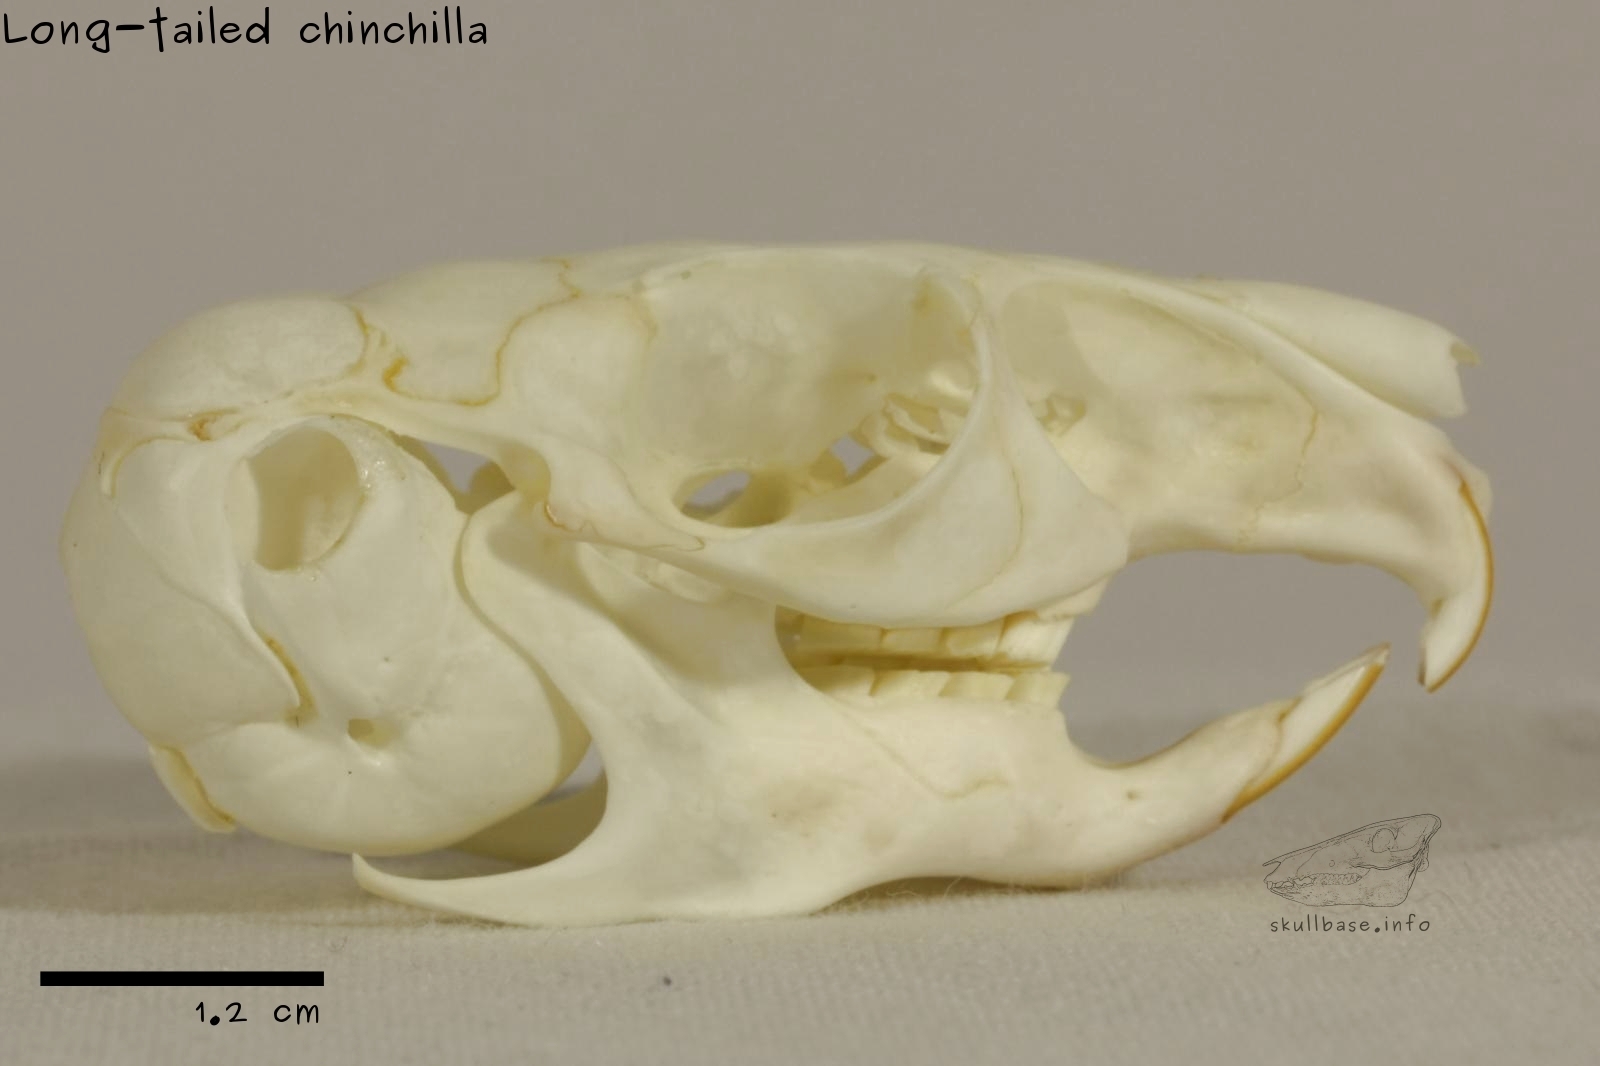 Long-tailed chinchilla (Chinchilla lanigera) skull lateral view